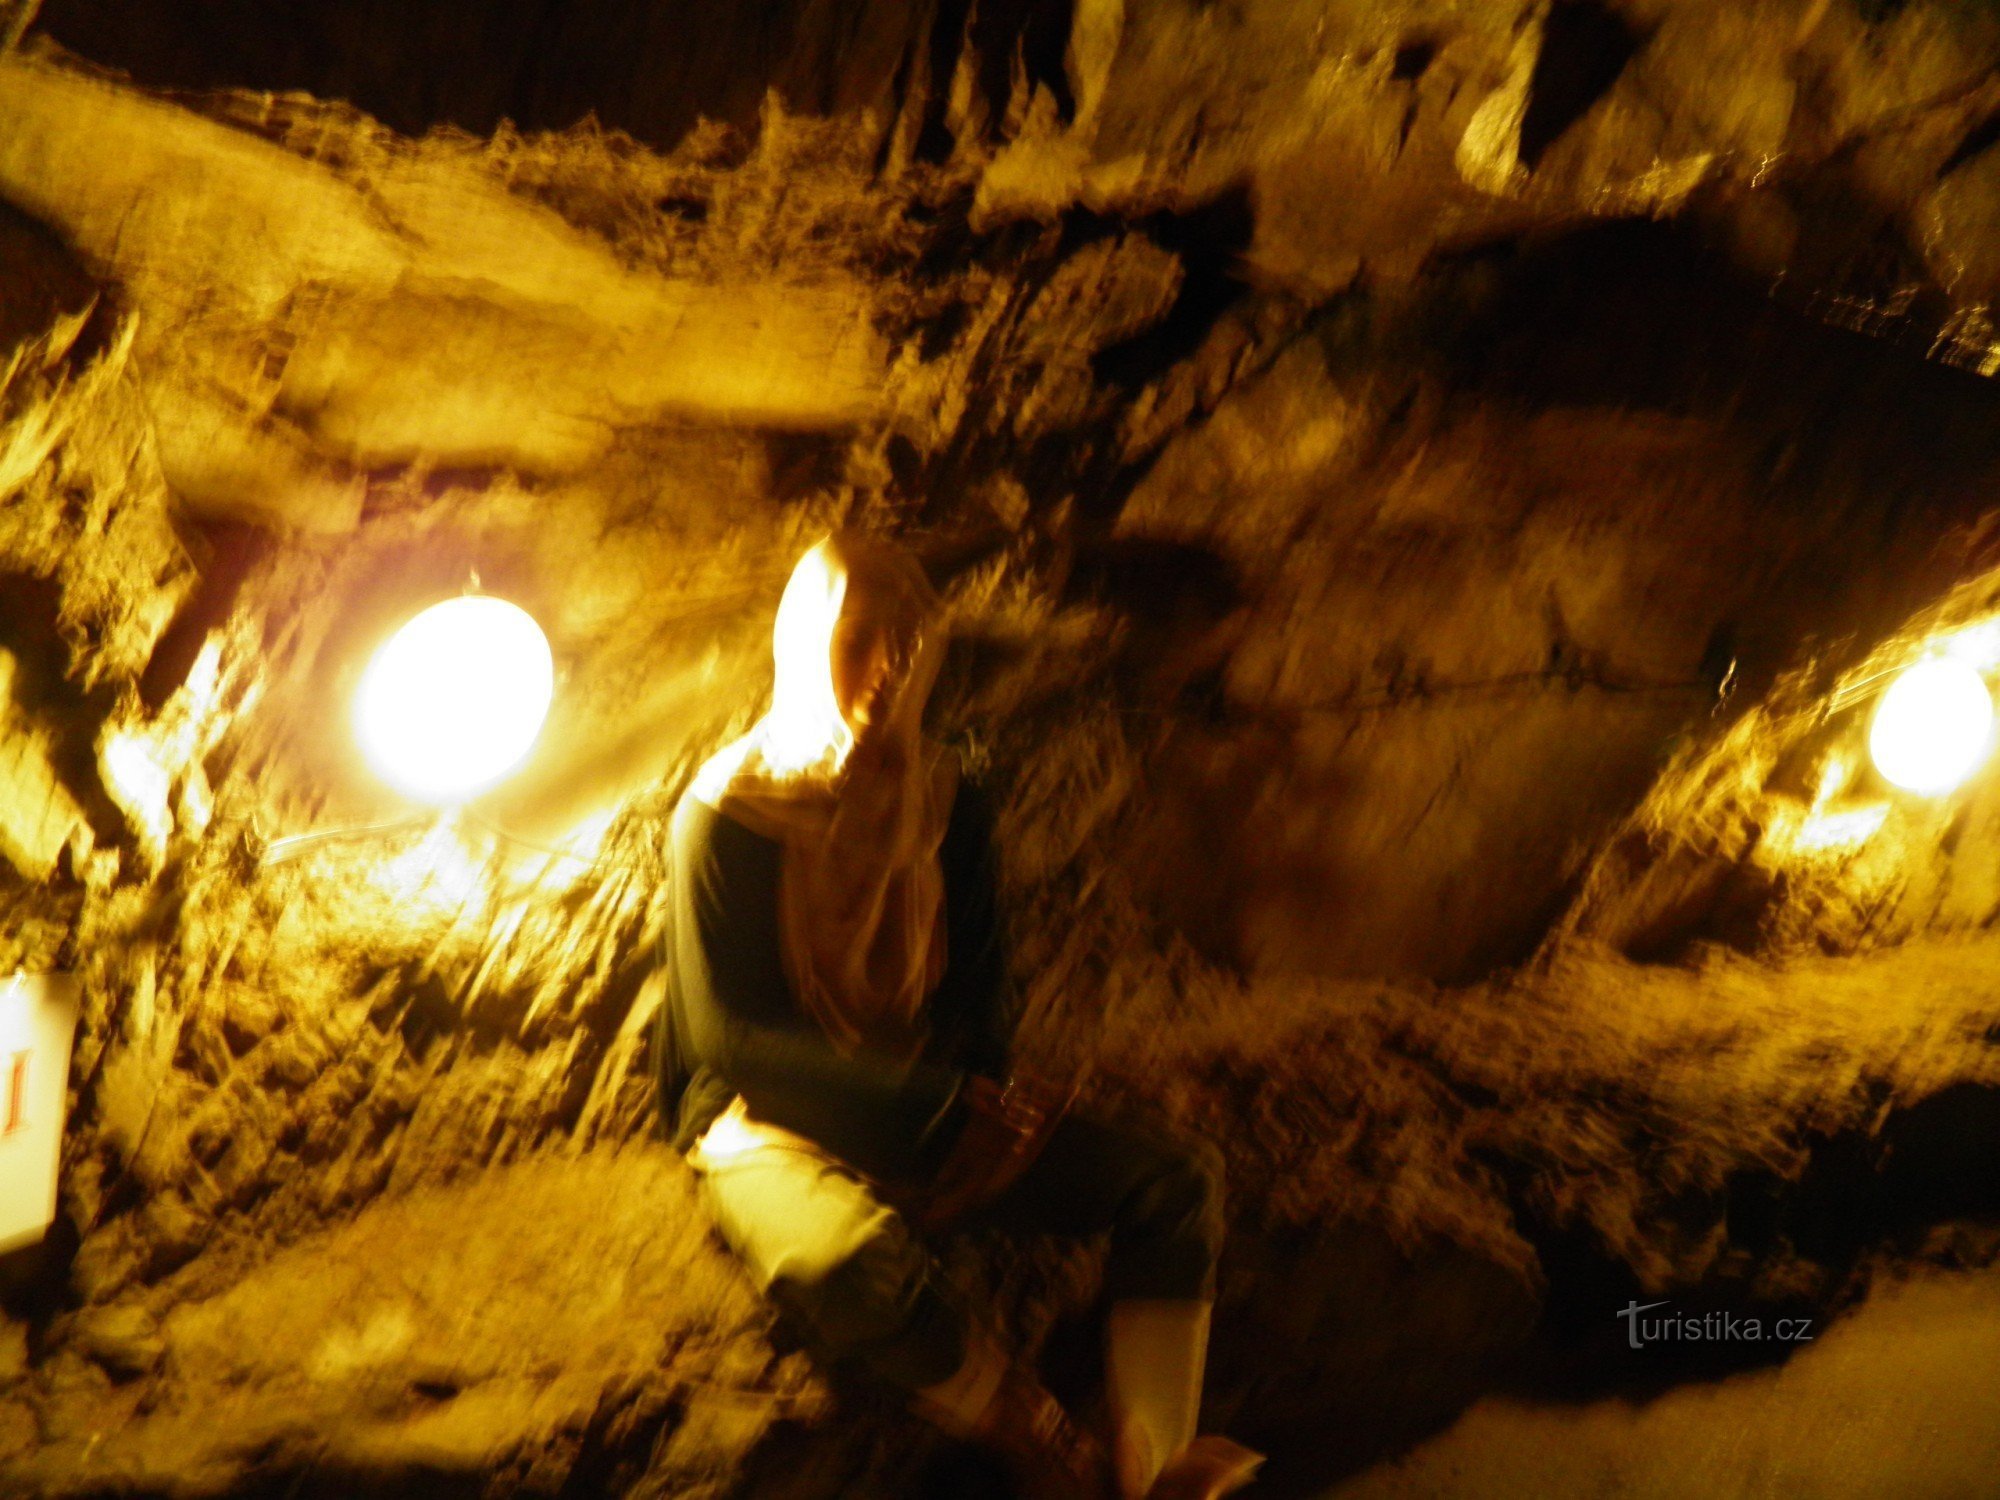 伊赫拉瓦的地下墓穴。